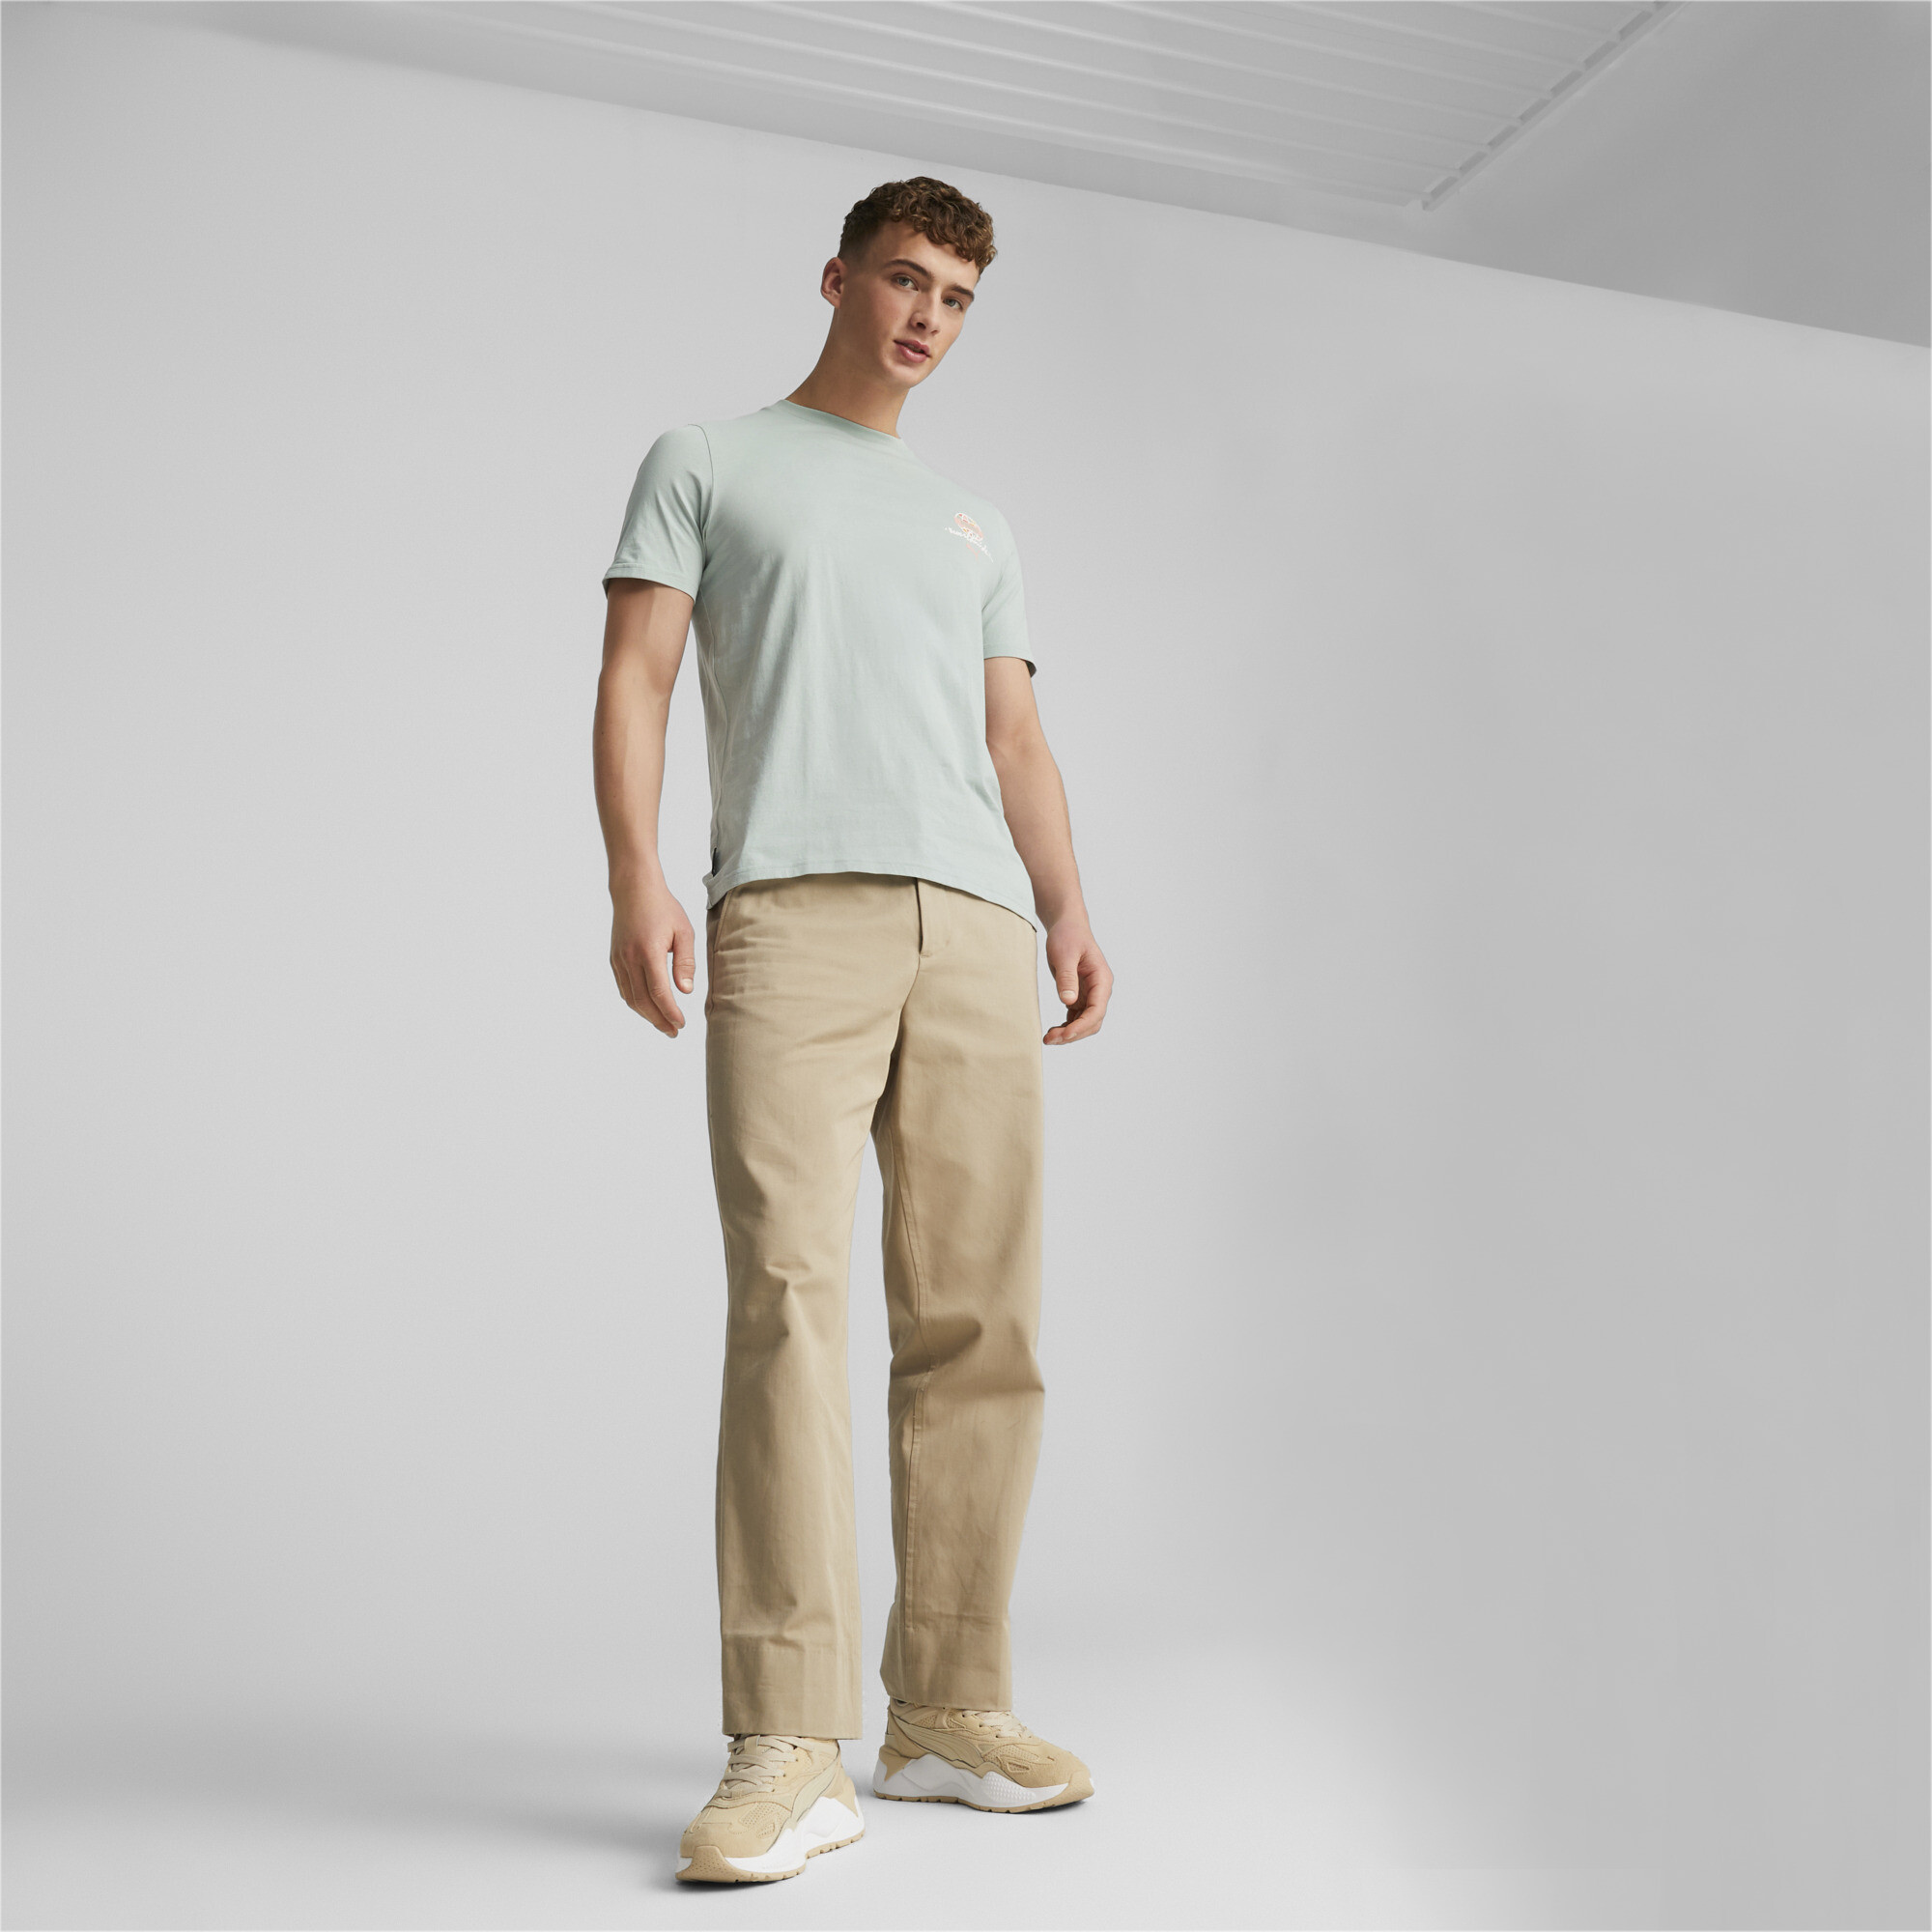 Men's Sportswear By PUMA T-Shirt In Green, Size 2XL